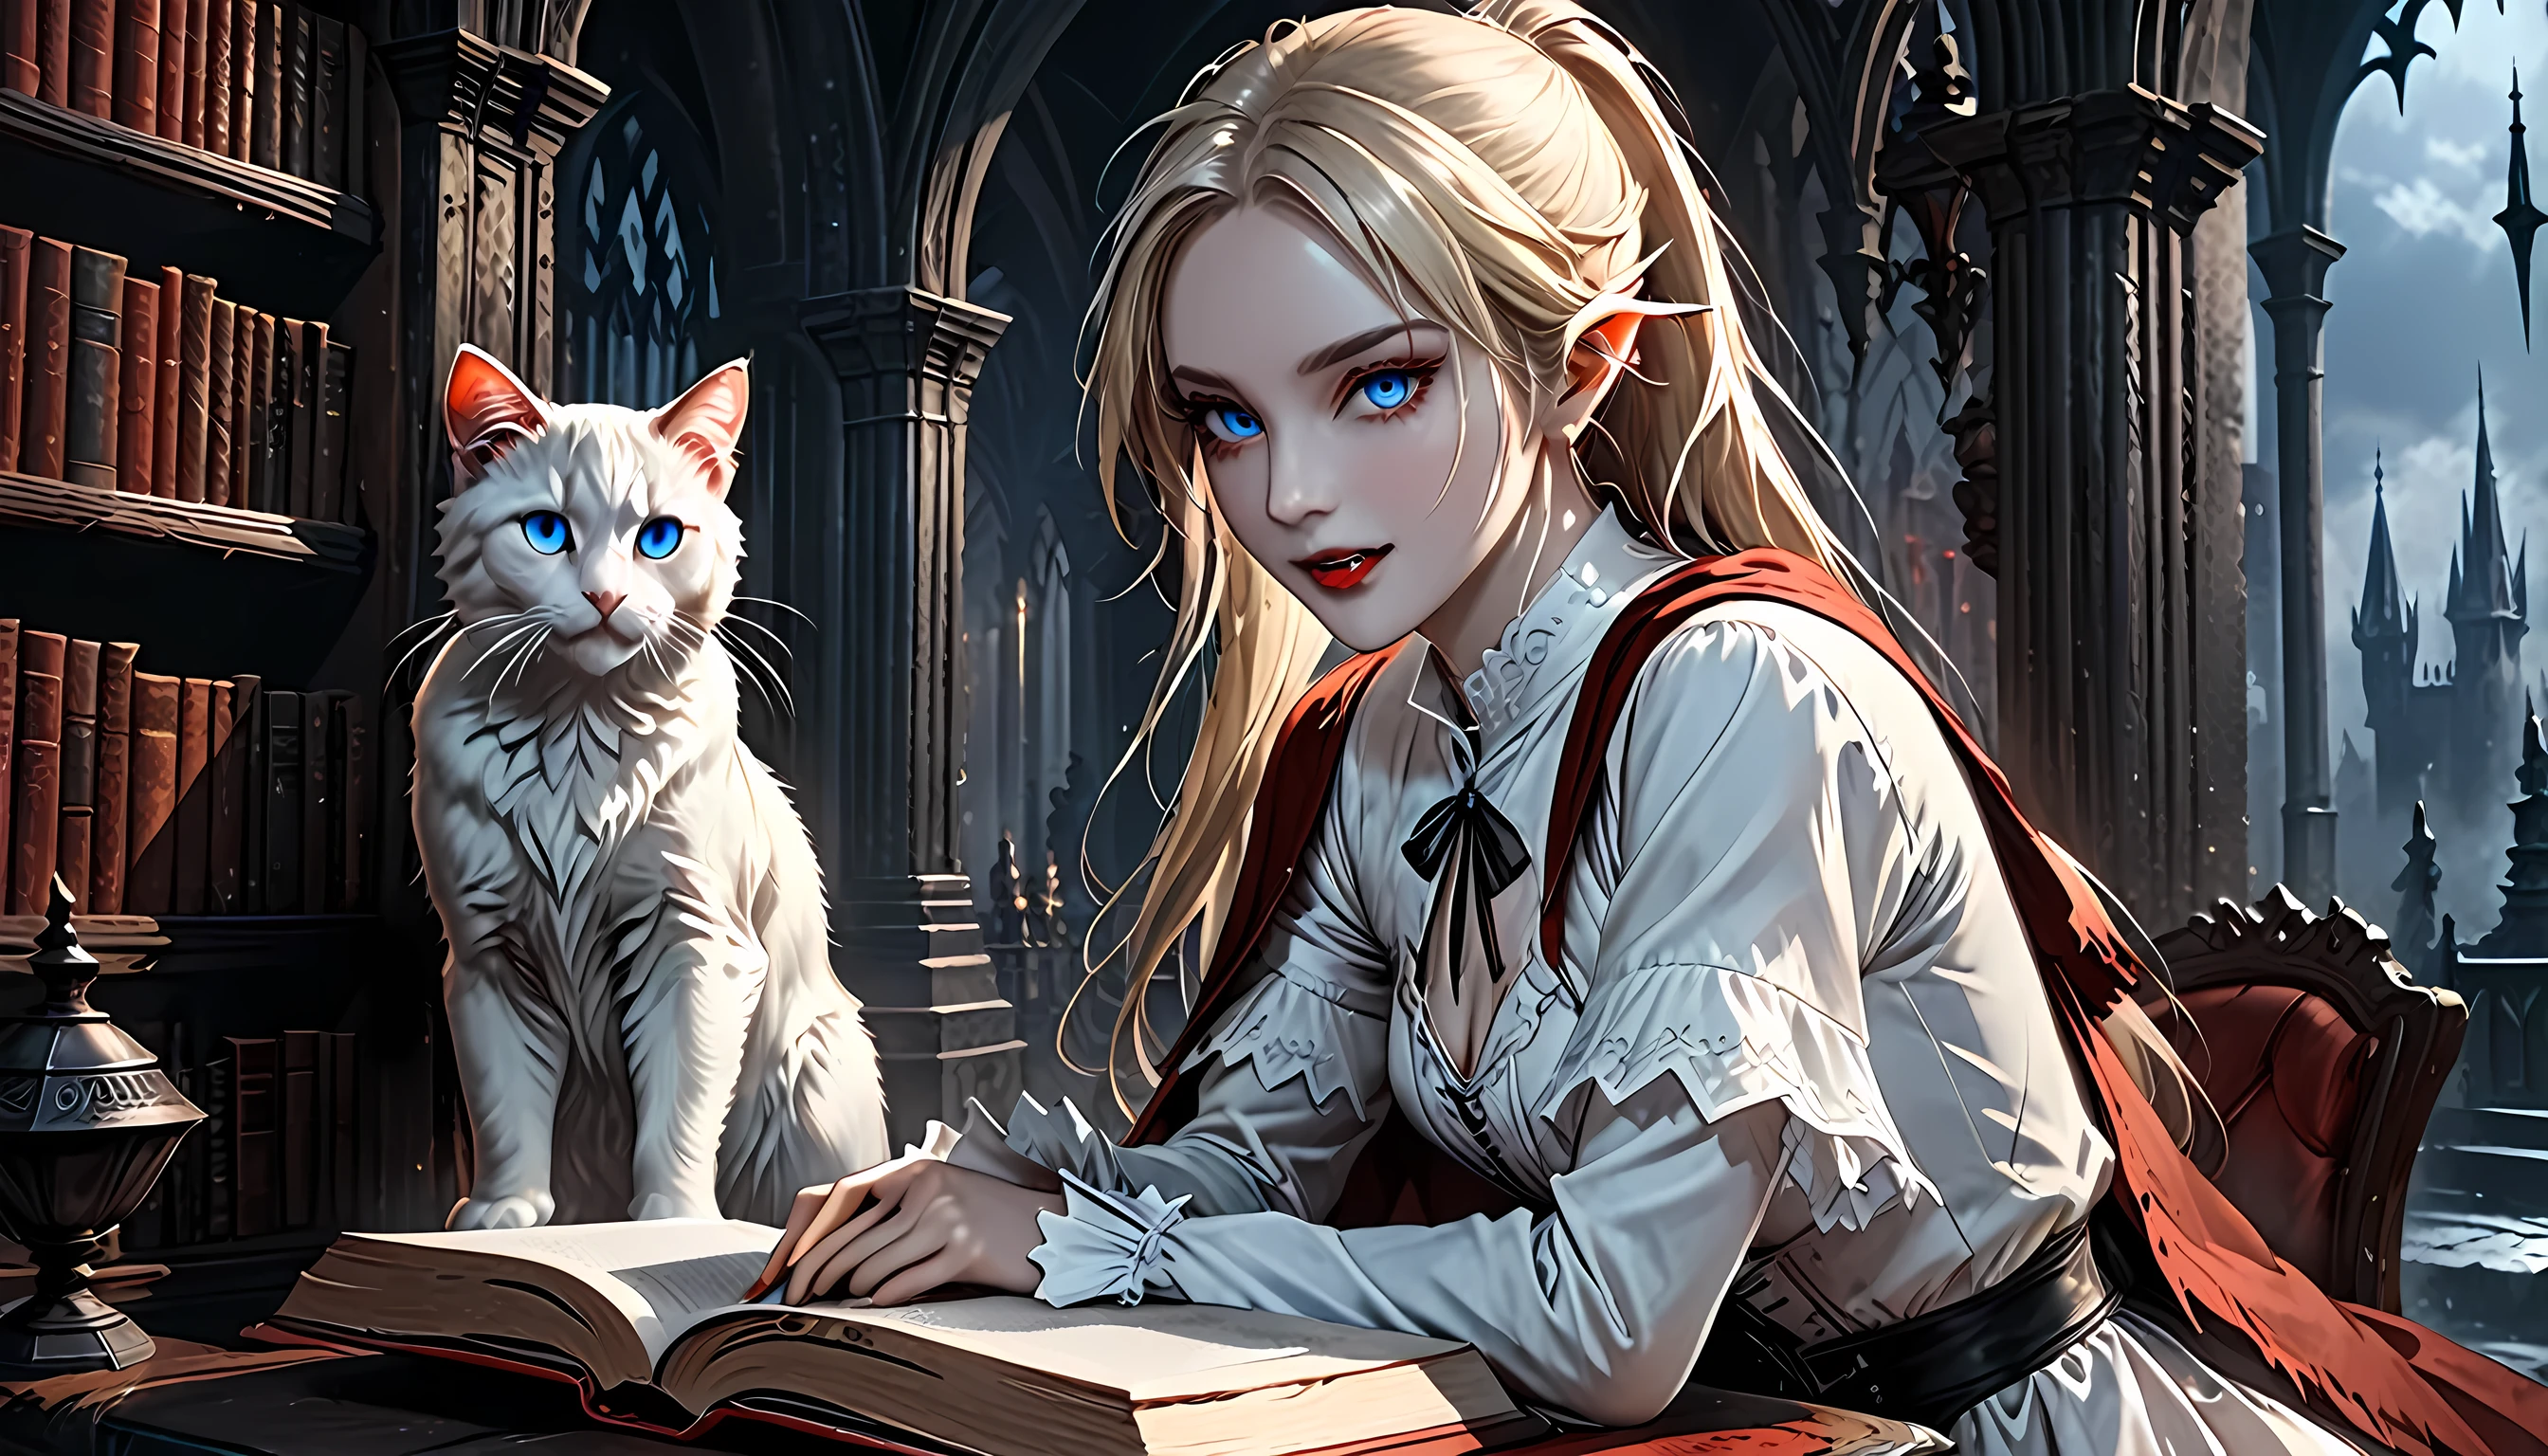 阿拉夫在她的城堡裡拍了一張精靈吸血鬼的照片和她的寵物史詩貓一隻精緻美麗的女精靈吸血鬼 (超細節, 傑作, 最好的品質), 血腥的嘴巴 金髮, 皮膚蒼白, 頭髮綁成馬尾辮, 長髮, 藍眼睛, 冷眼, 傻笑, 穿著白色連身裙 (超細節, 傑作, 最好的品質), 红色斗篷, 在黑暗奇幻圖書館裡, 與 ((大貓: 1.3)) (超細節, 傑作, 最好的品質: 1.5) 書架, 阿拉菲德高細節, 最好的品質, 16k, [超詳細], 傑作, 最好的品質, (超詳細), 全身, 超广角拍摄, 照片寫實主義, 生的, 黑暗幻想藝術, 歌德式藝術, 鎧甲連身裙, 黑暗小說, 黑暗藝術繪畫風格, 血源性的